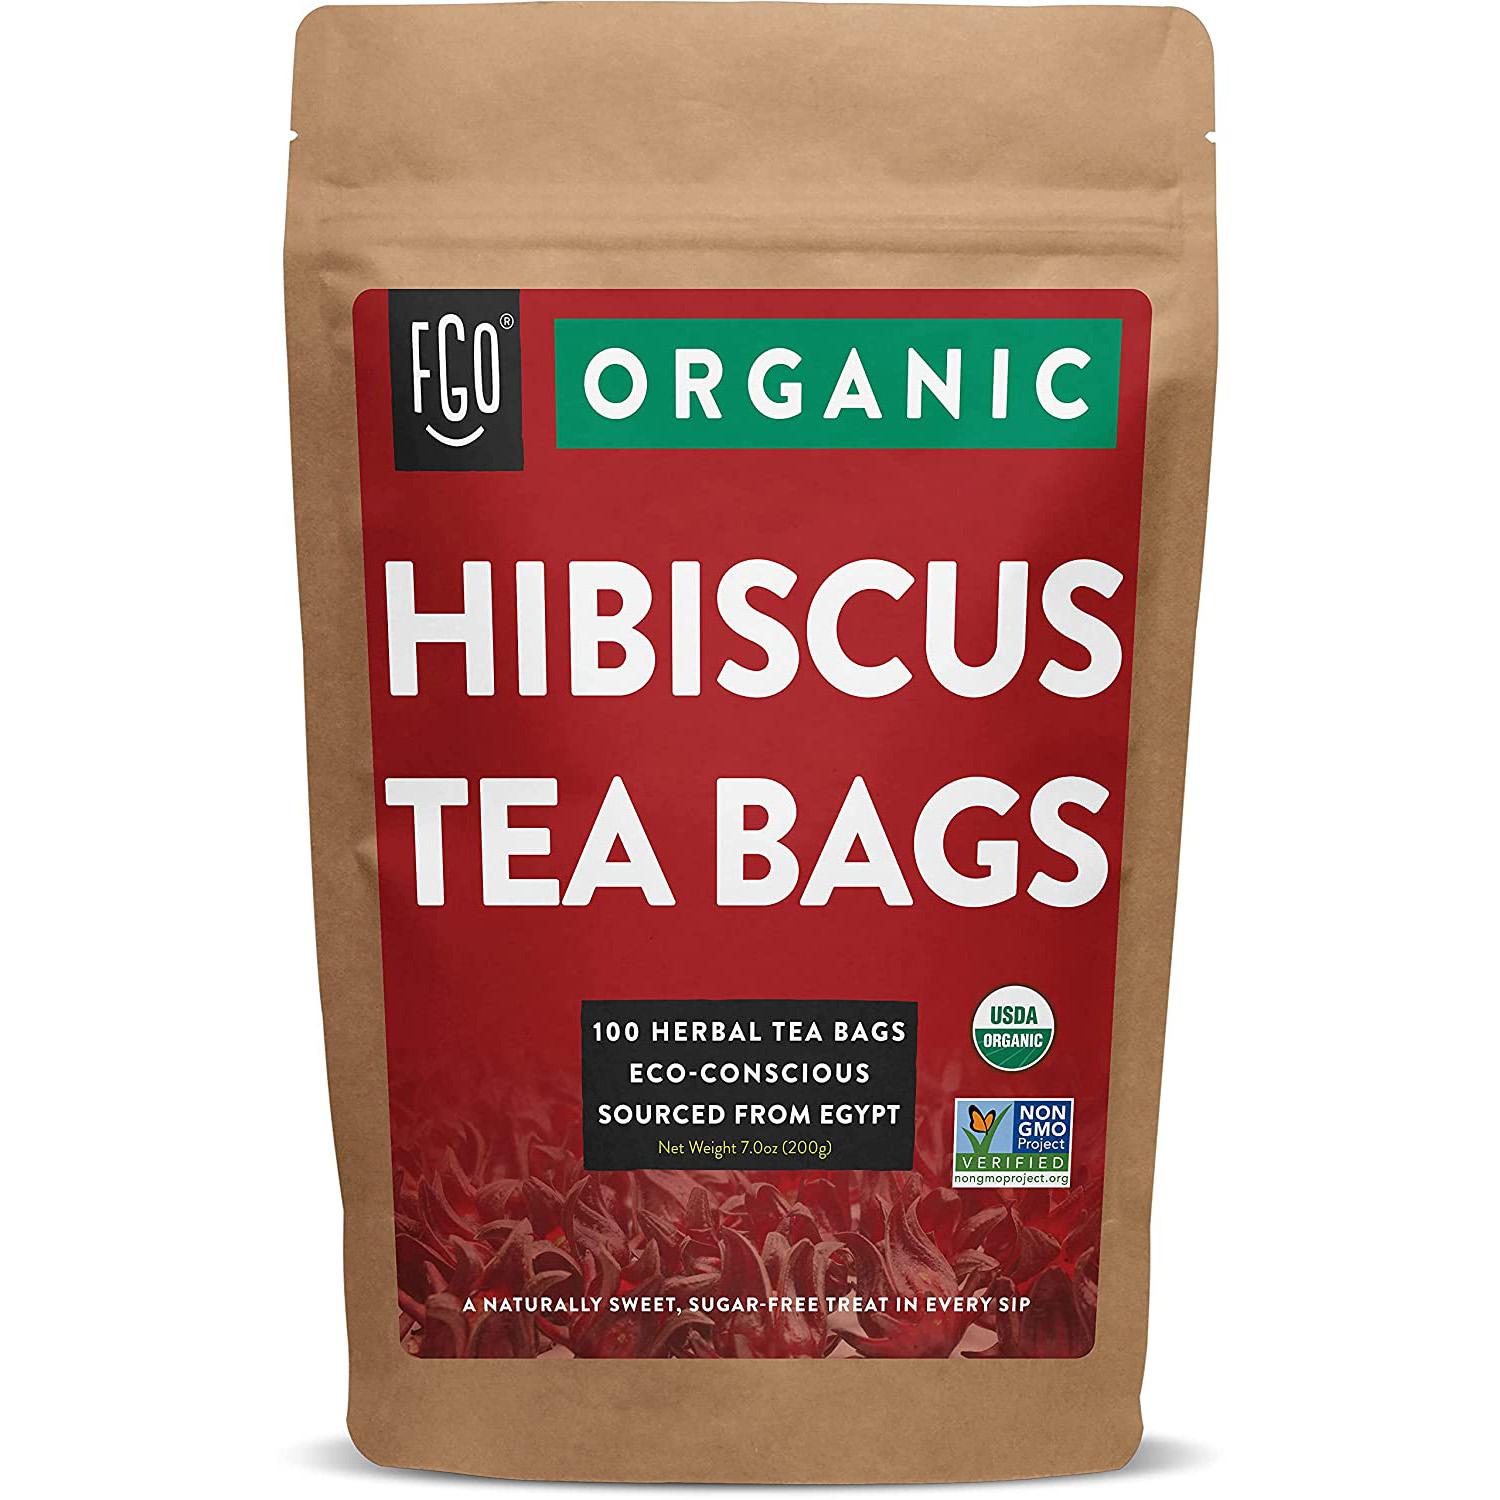 100 Organic Hibiscus Tea Bags for $11.39 Shipped